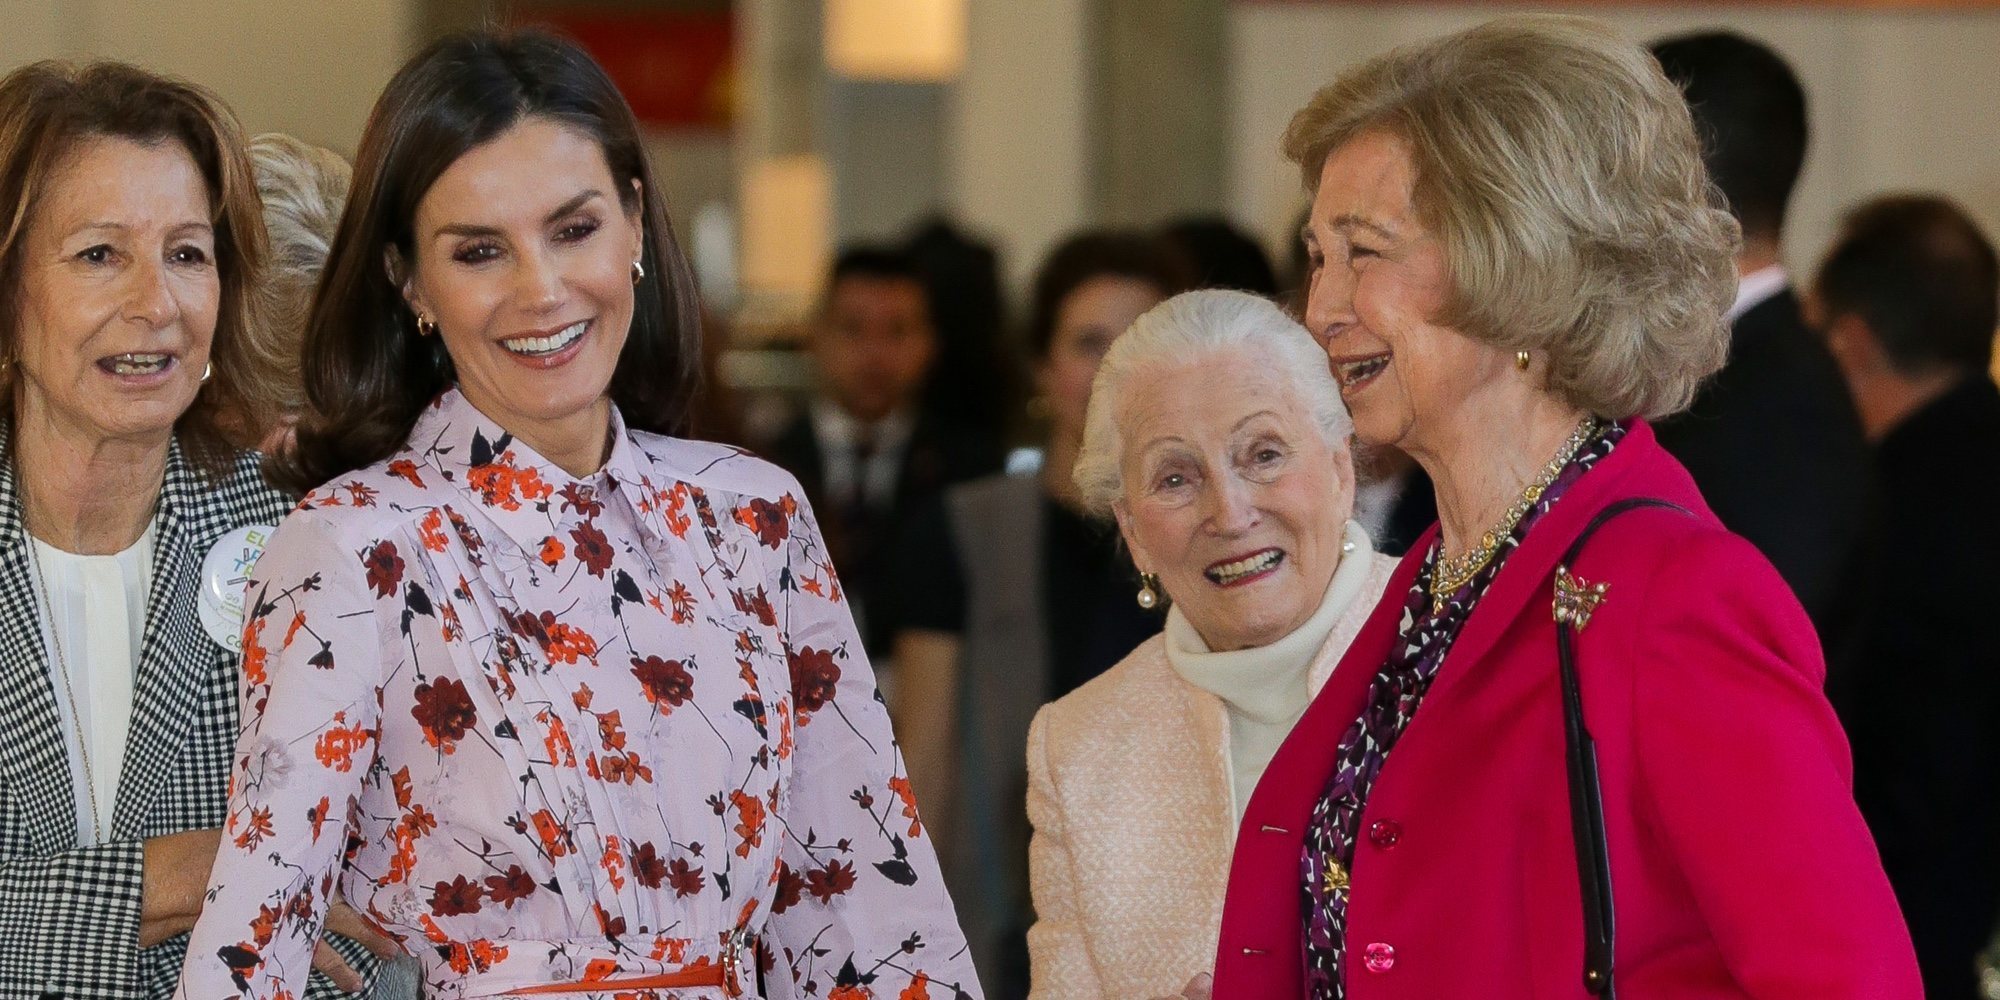 La Reina Letizia y la Reina Sofía, cómplices y sonrientes en su visita al Rastrillo Nuevo Futuro 2019